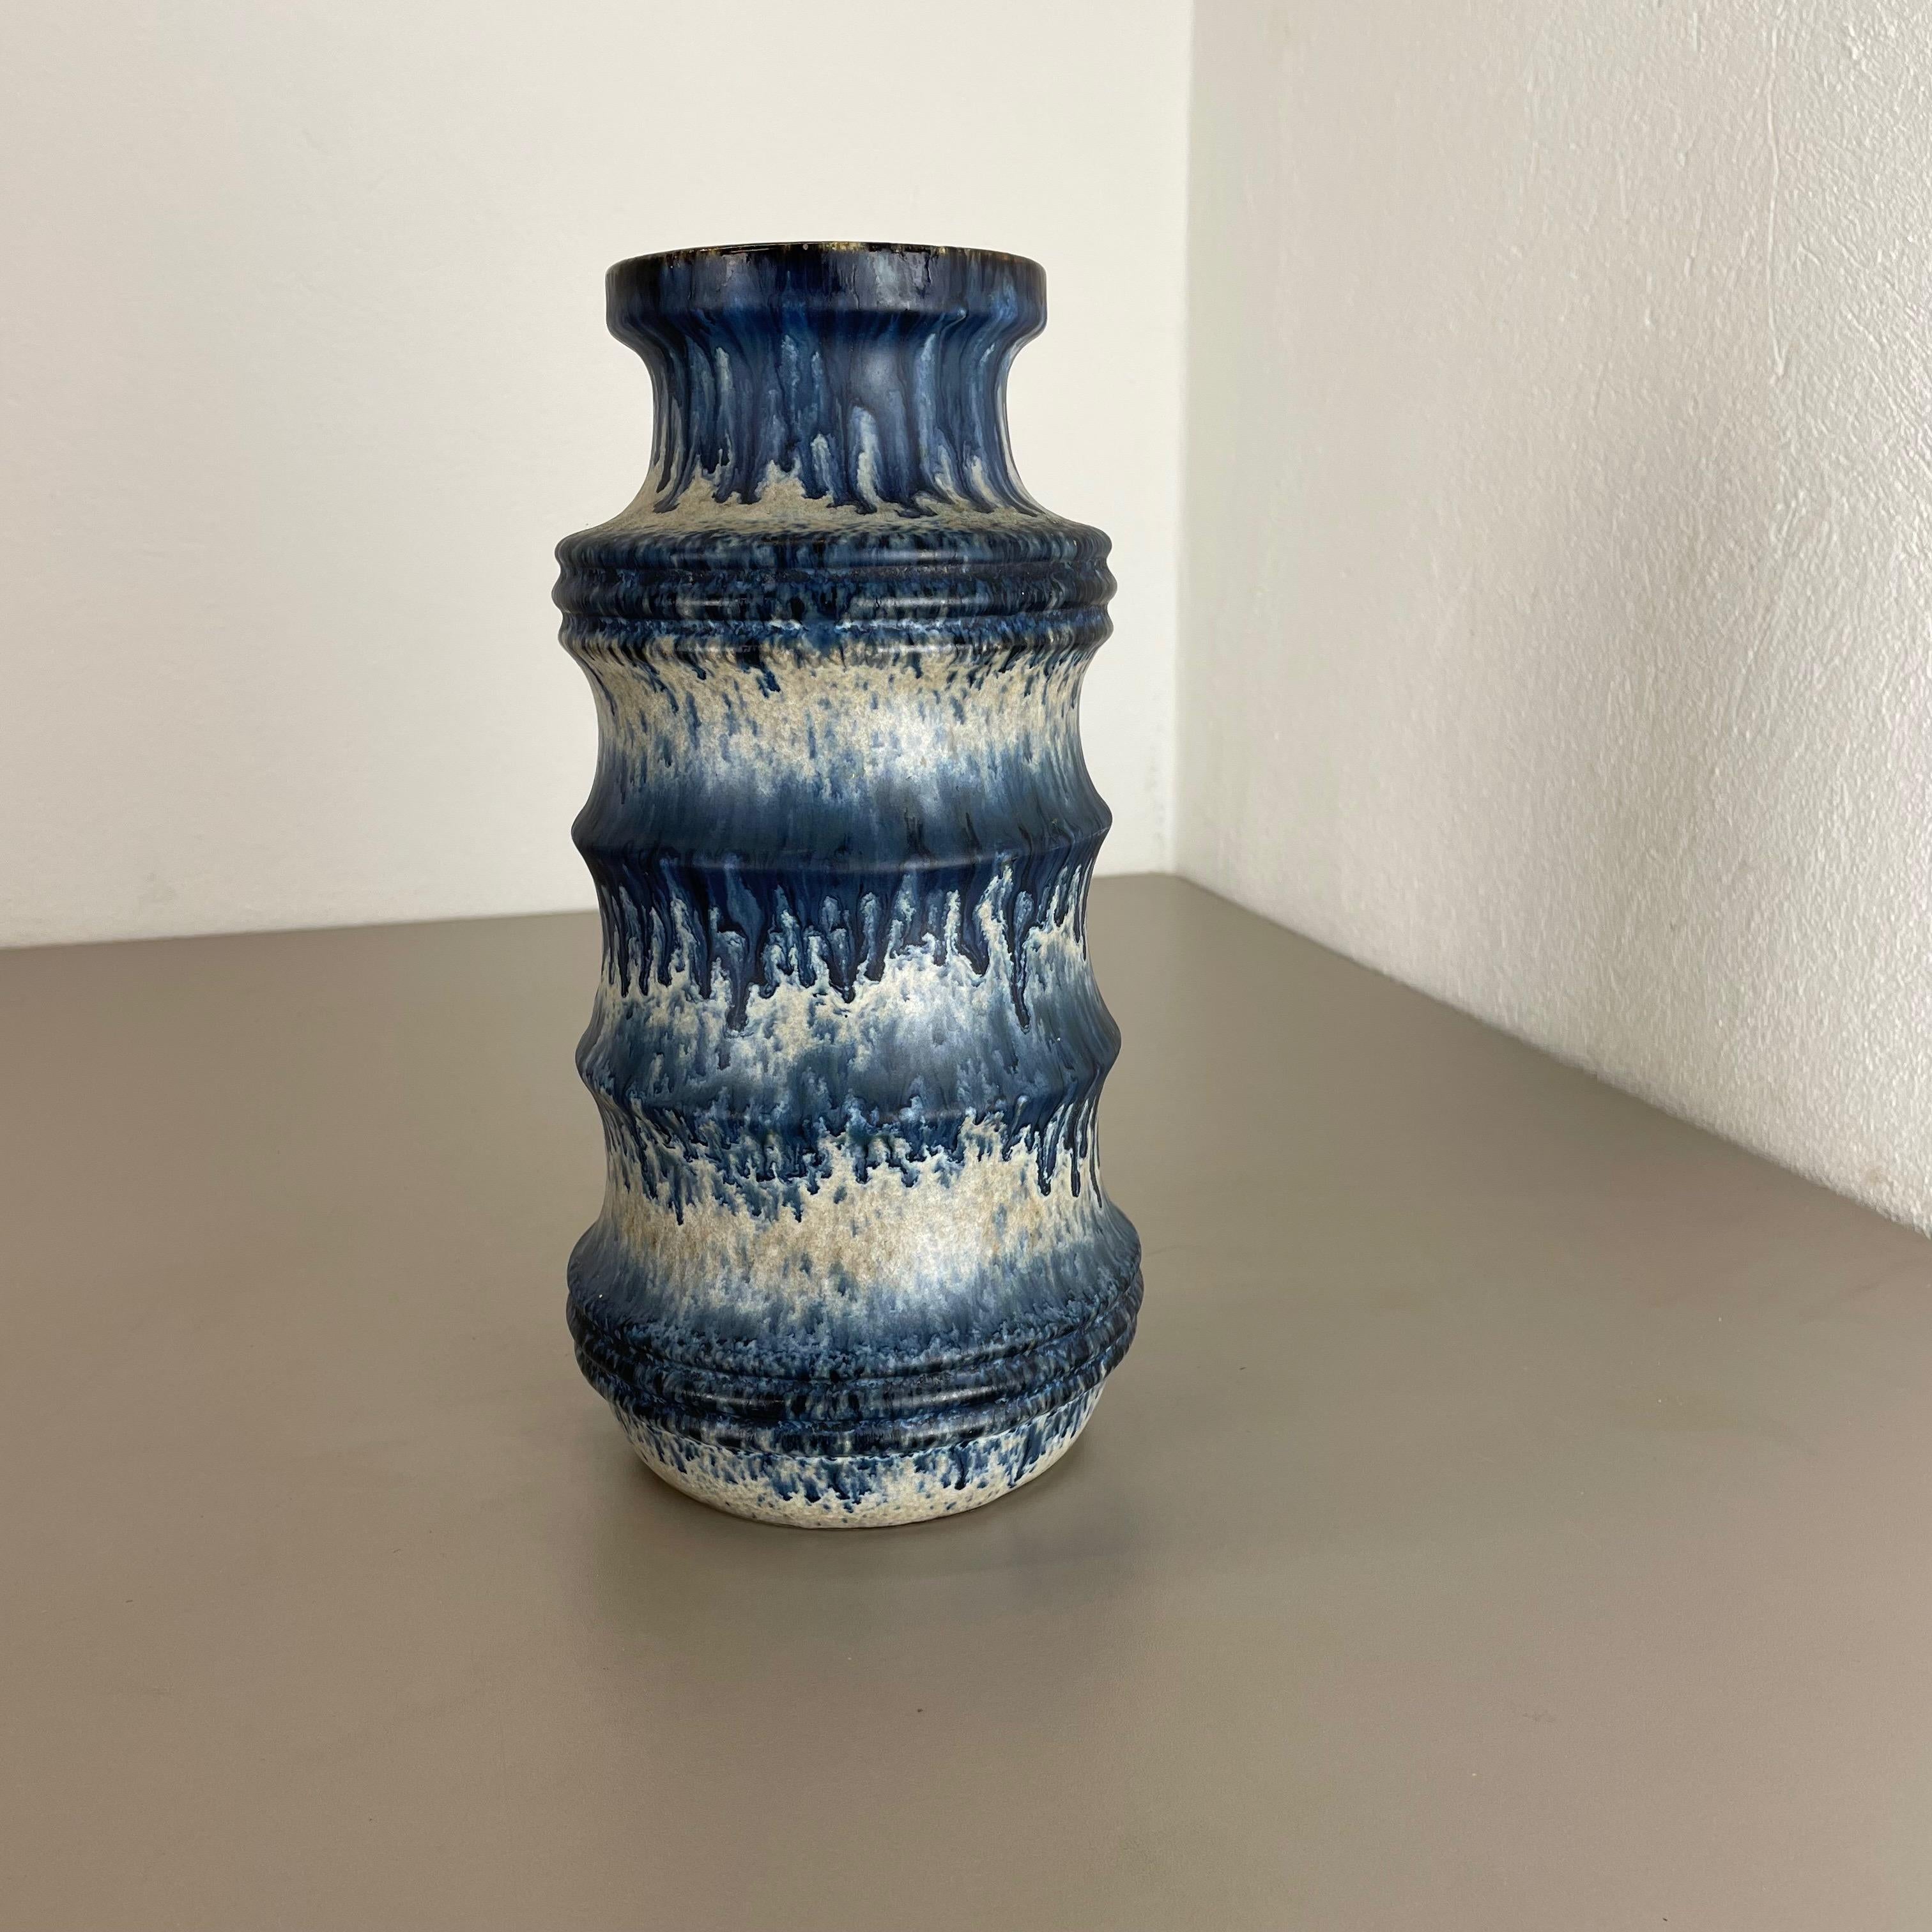 Artikel:

Fette Lava-Kunstvase


Produzent:

Scheurich, Deutschland



Jahrzehnt:

1970s




Diese originelle Vintage-Vase wurde in den 1970er Jahren in Deutschland hergestellt. Sie ist aus Keramik in fetter Lava-Optik mit abstrakter Illustration in